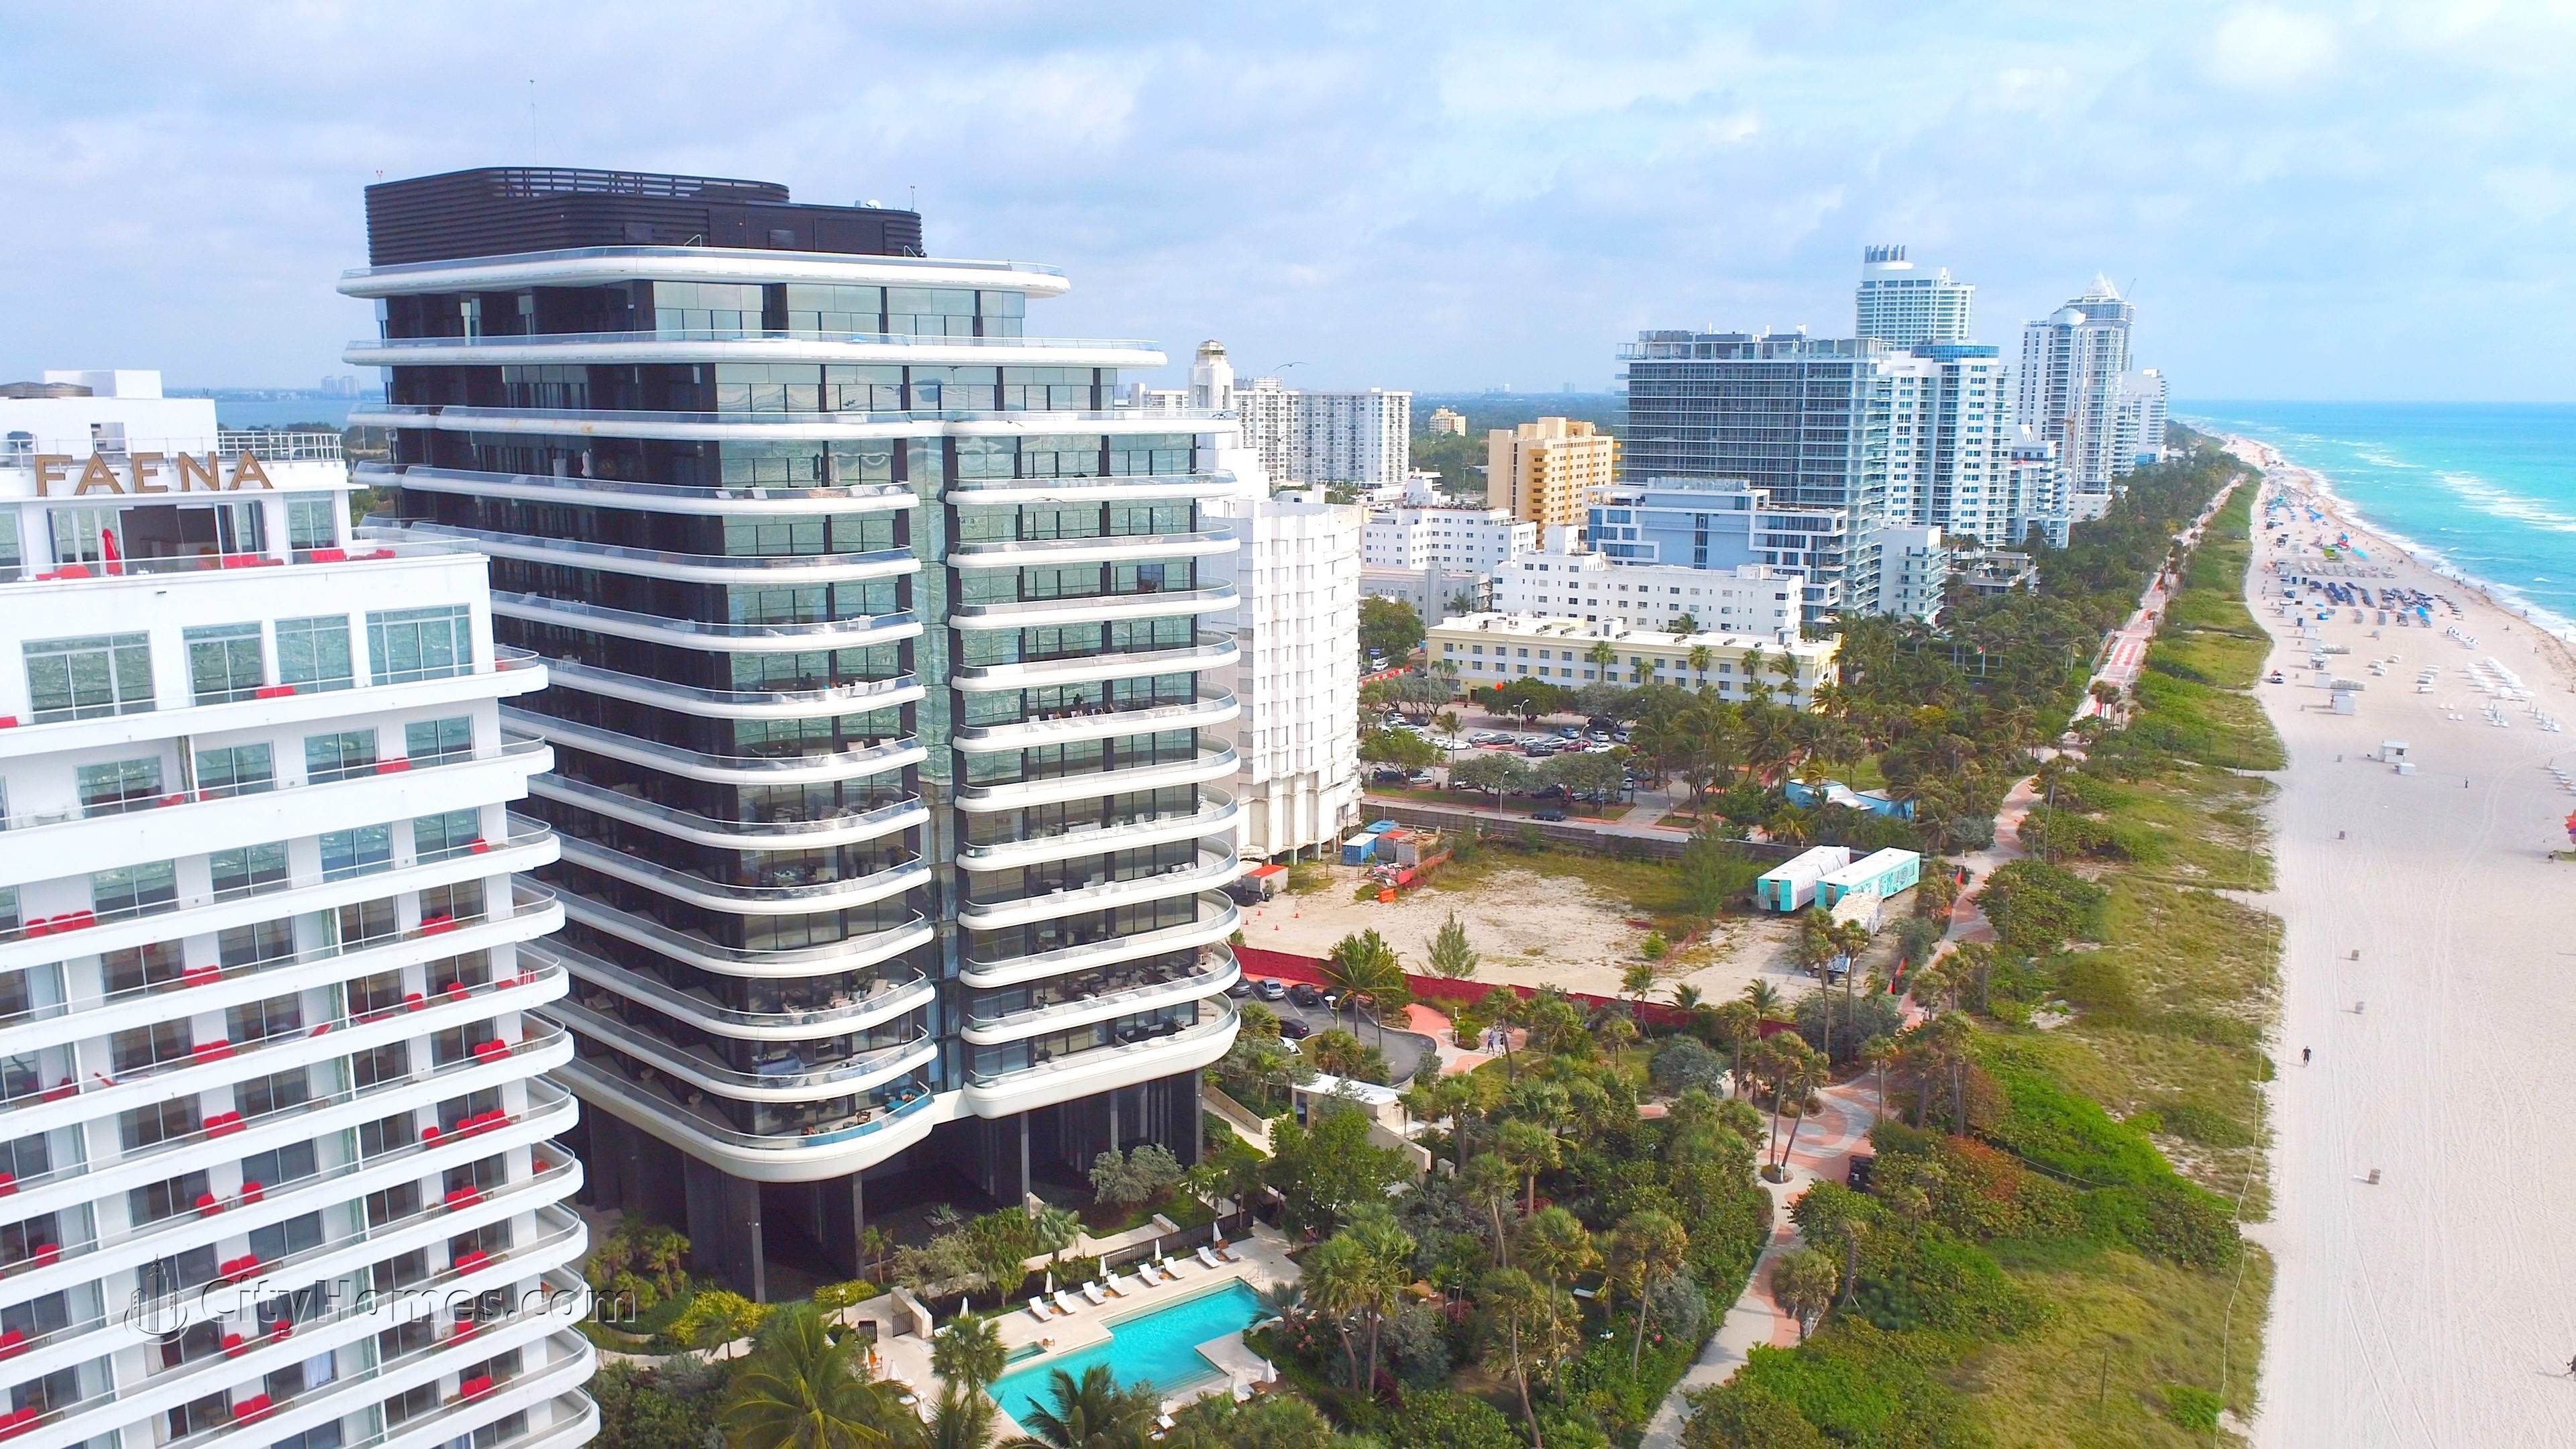 FAENA HOUSE MIAMI BEACH xây dựng tại 3315 Collins Avenue, Mid Beach, Miami Beach, FL 33140